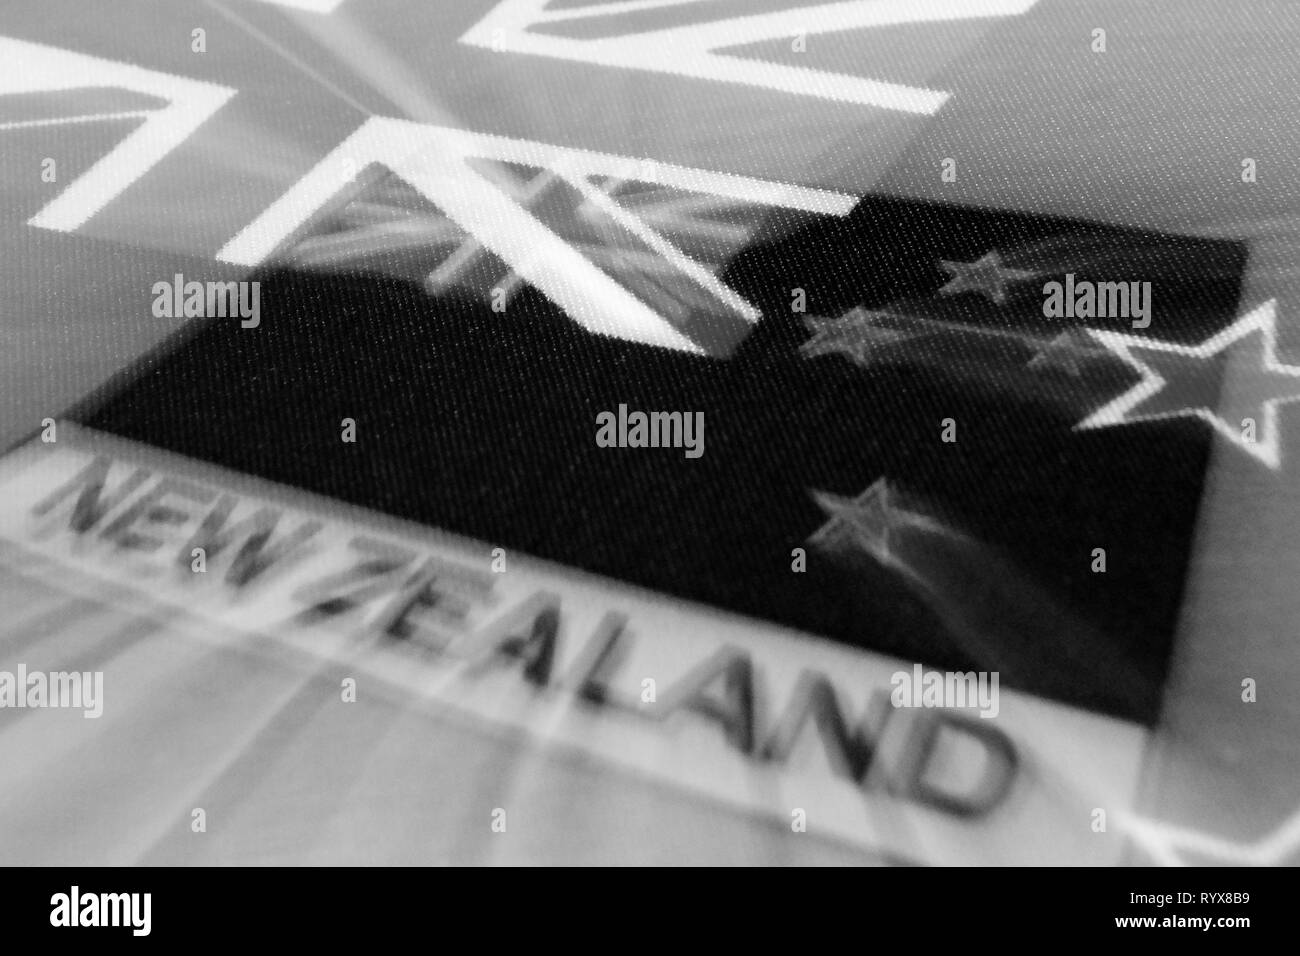 Schwarz-weiß-Bild der Flagge Neuseeland symbolisiert die Trauer. Fliegende Sterne symbolisieren die Seelen der Toten Menschen. Stockfoto